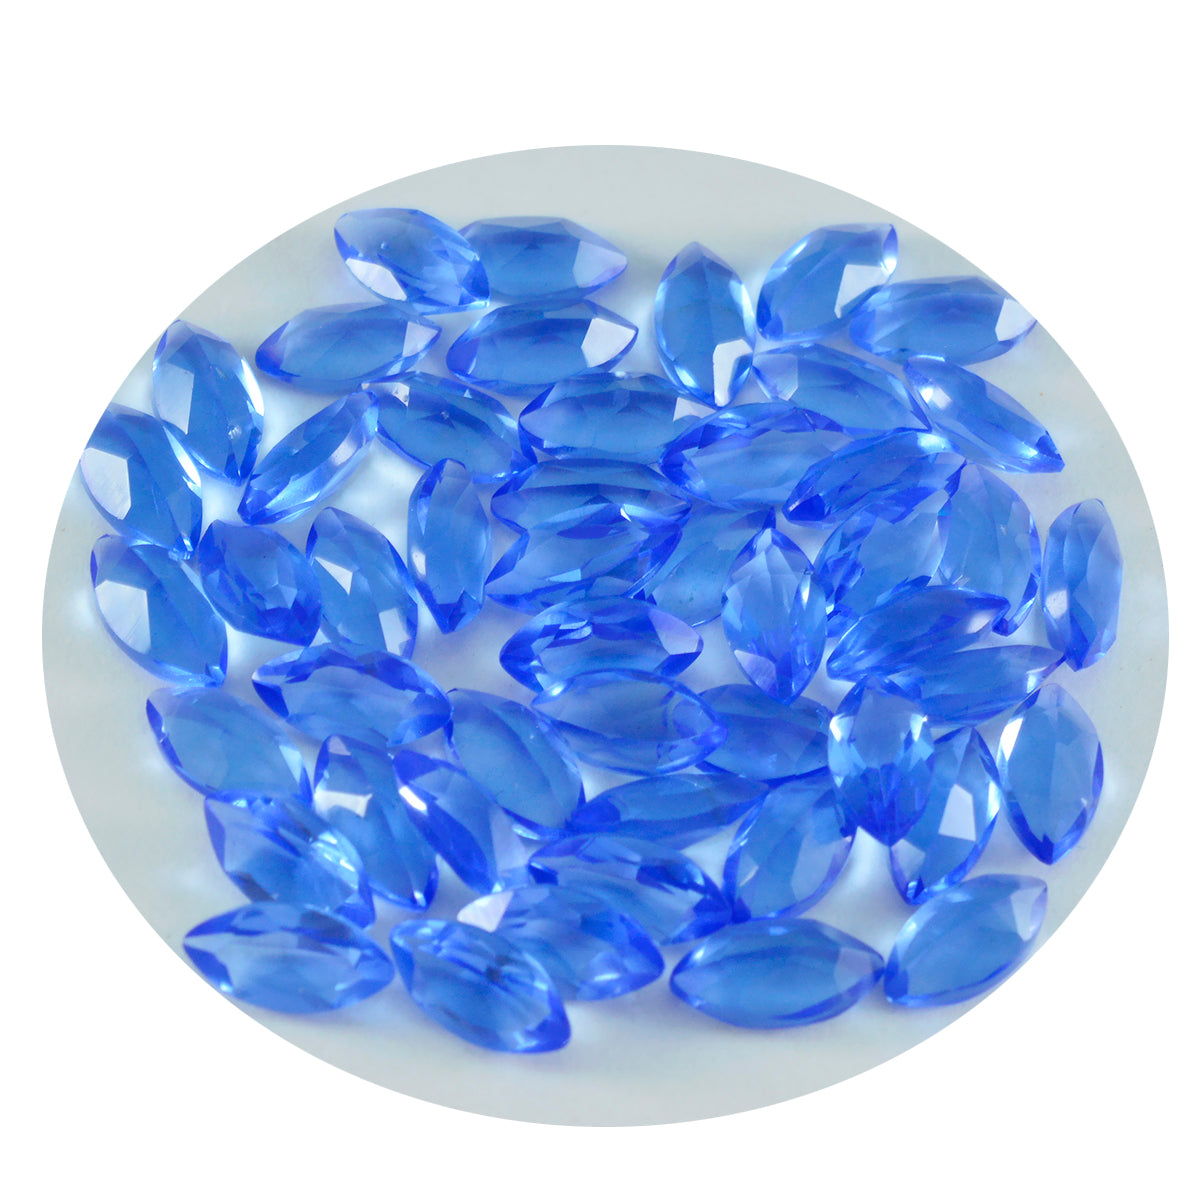 riyogems 1 шт. синий сапфир cz ограненный 3x6 мм форма маркиза прекрасное качество россыпь драгоценных камней